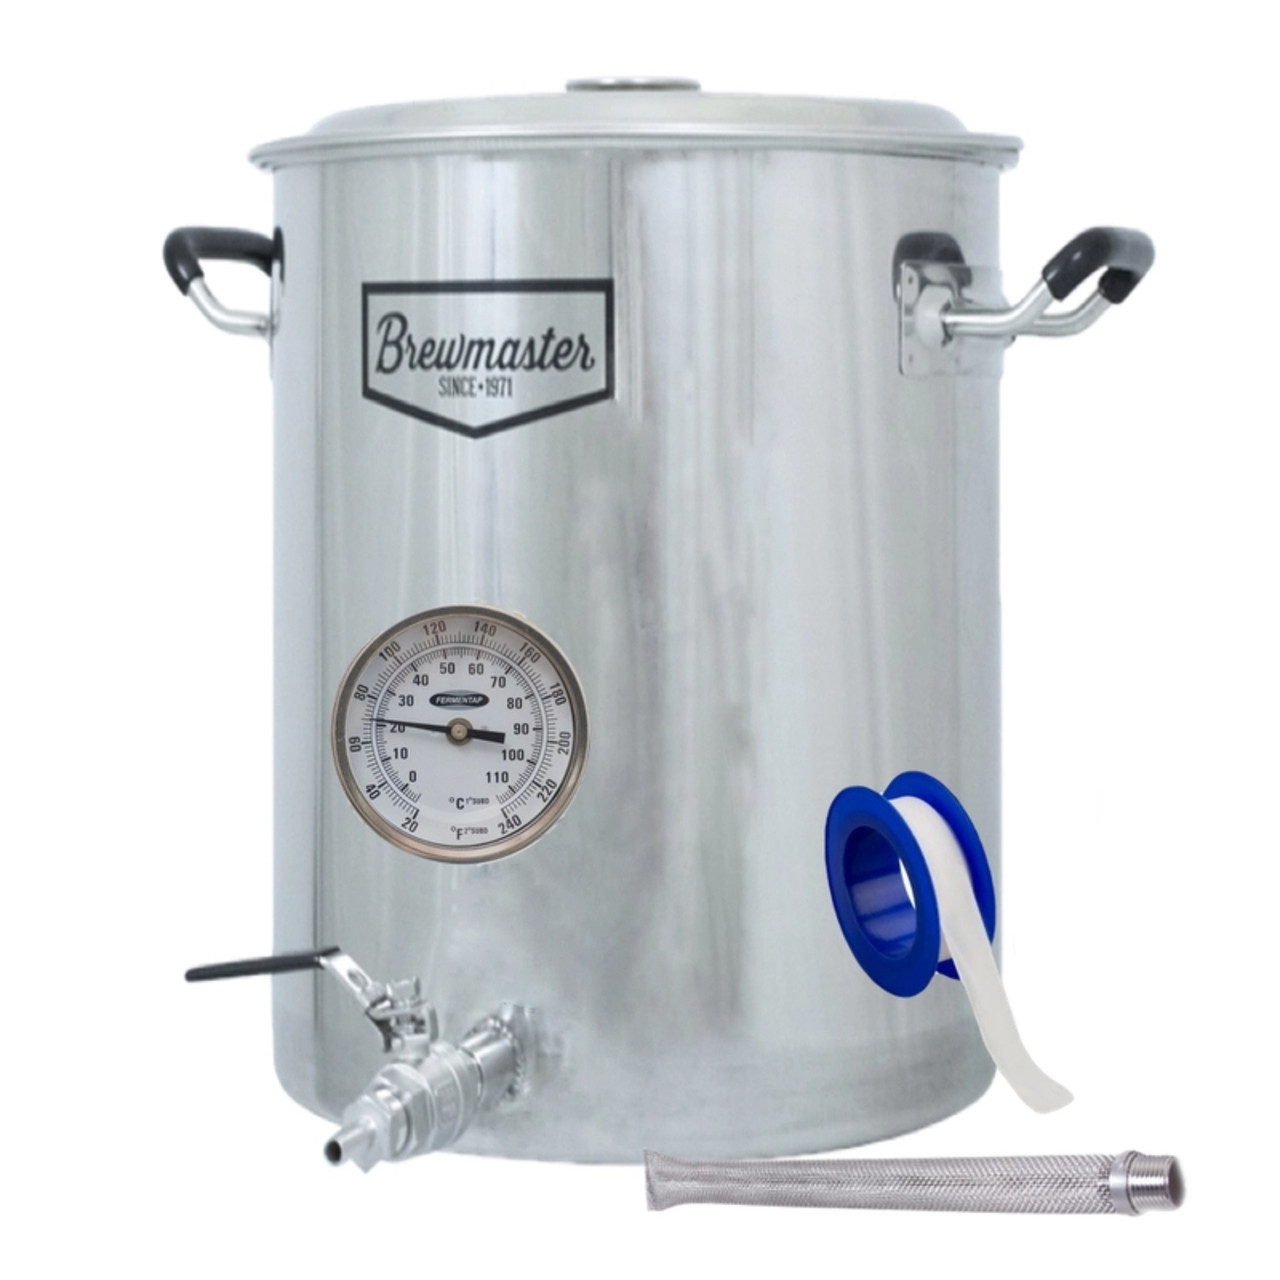 18.5 Gallon Brewmaster Brewing Kettle – Home Fermenter®